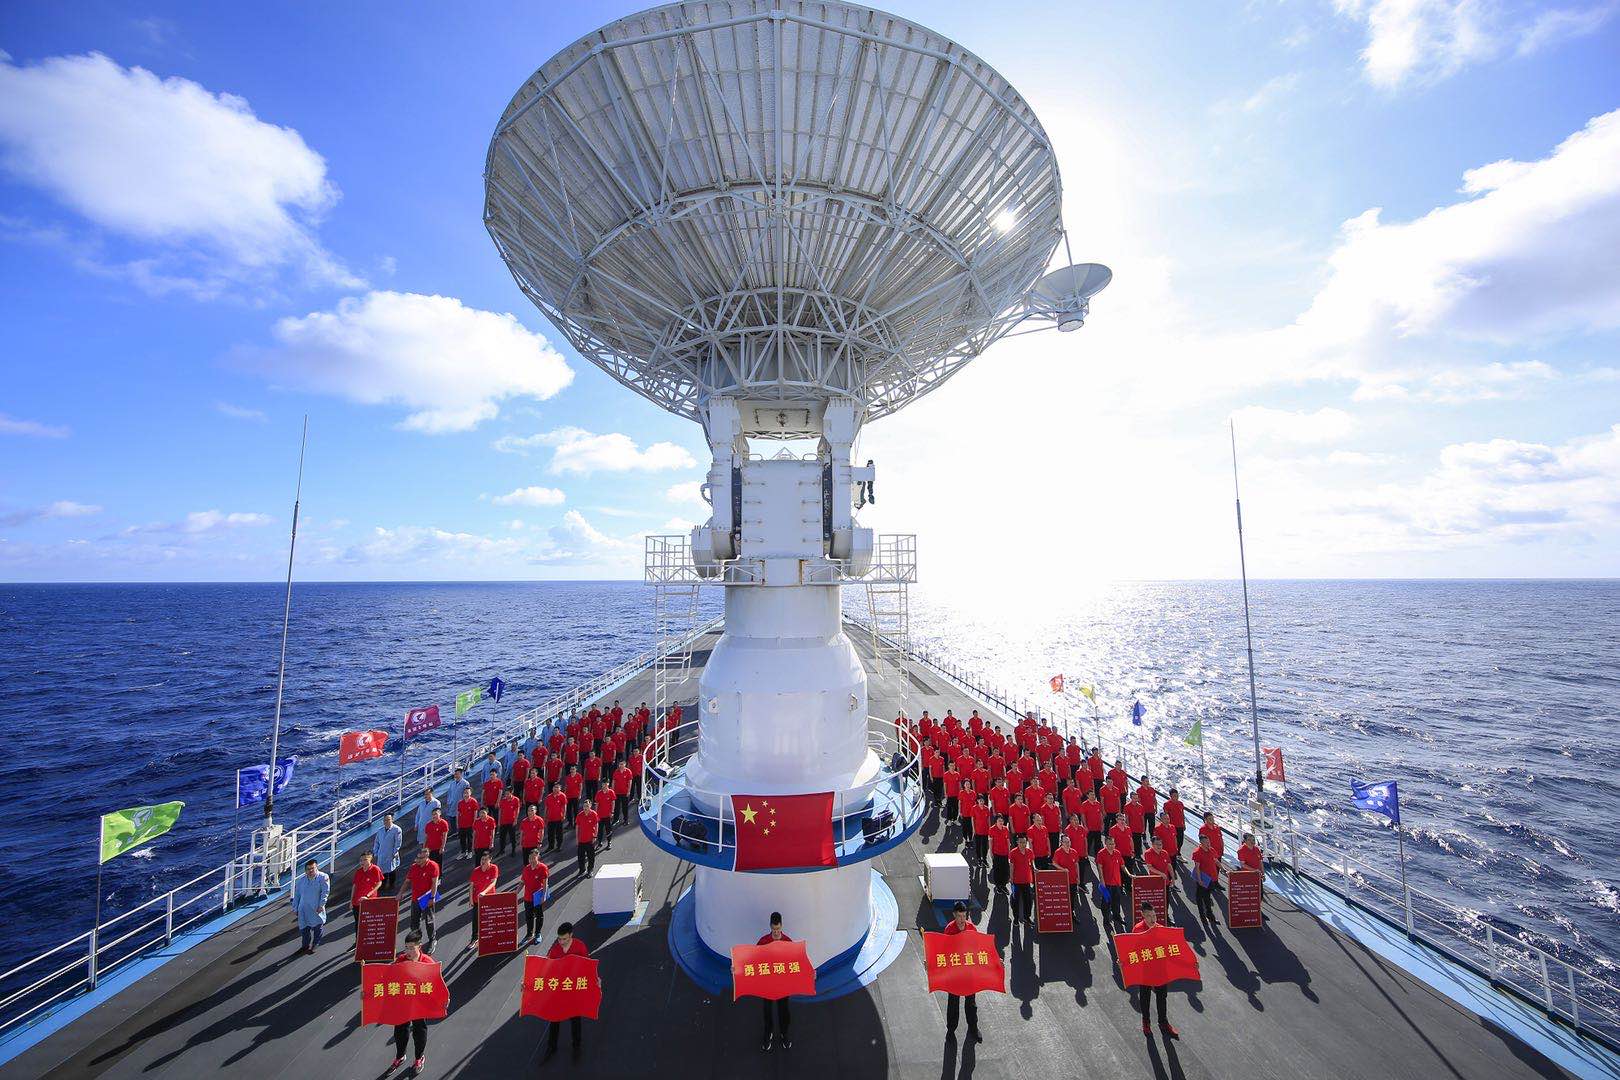 3月9日,远望5号船在太平洋某海域圆满完成第五十四颗北斗导航卫星海上